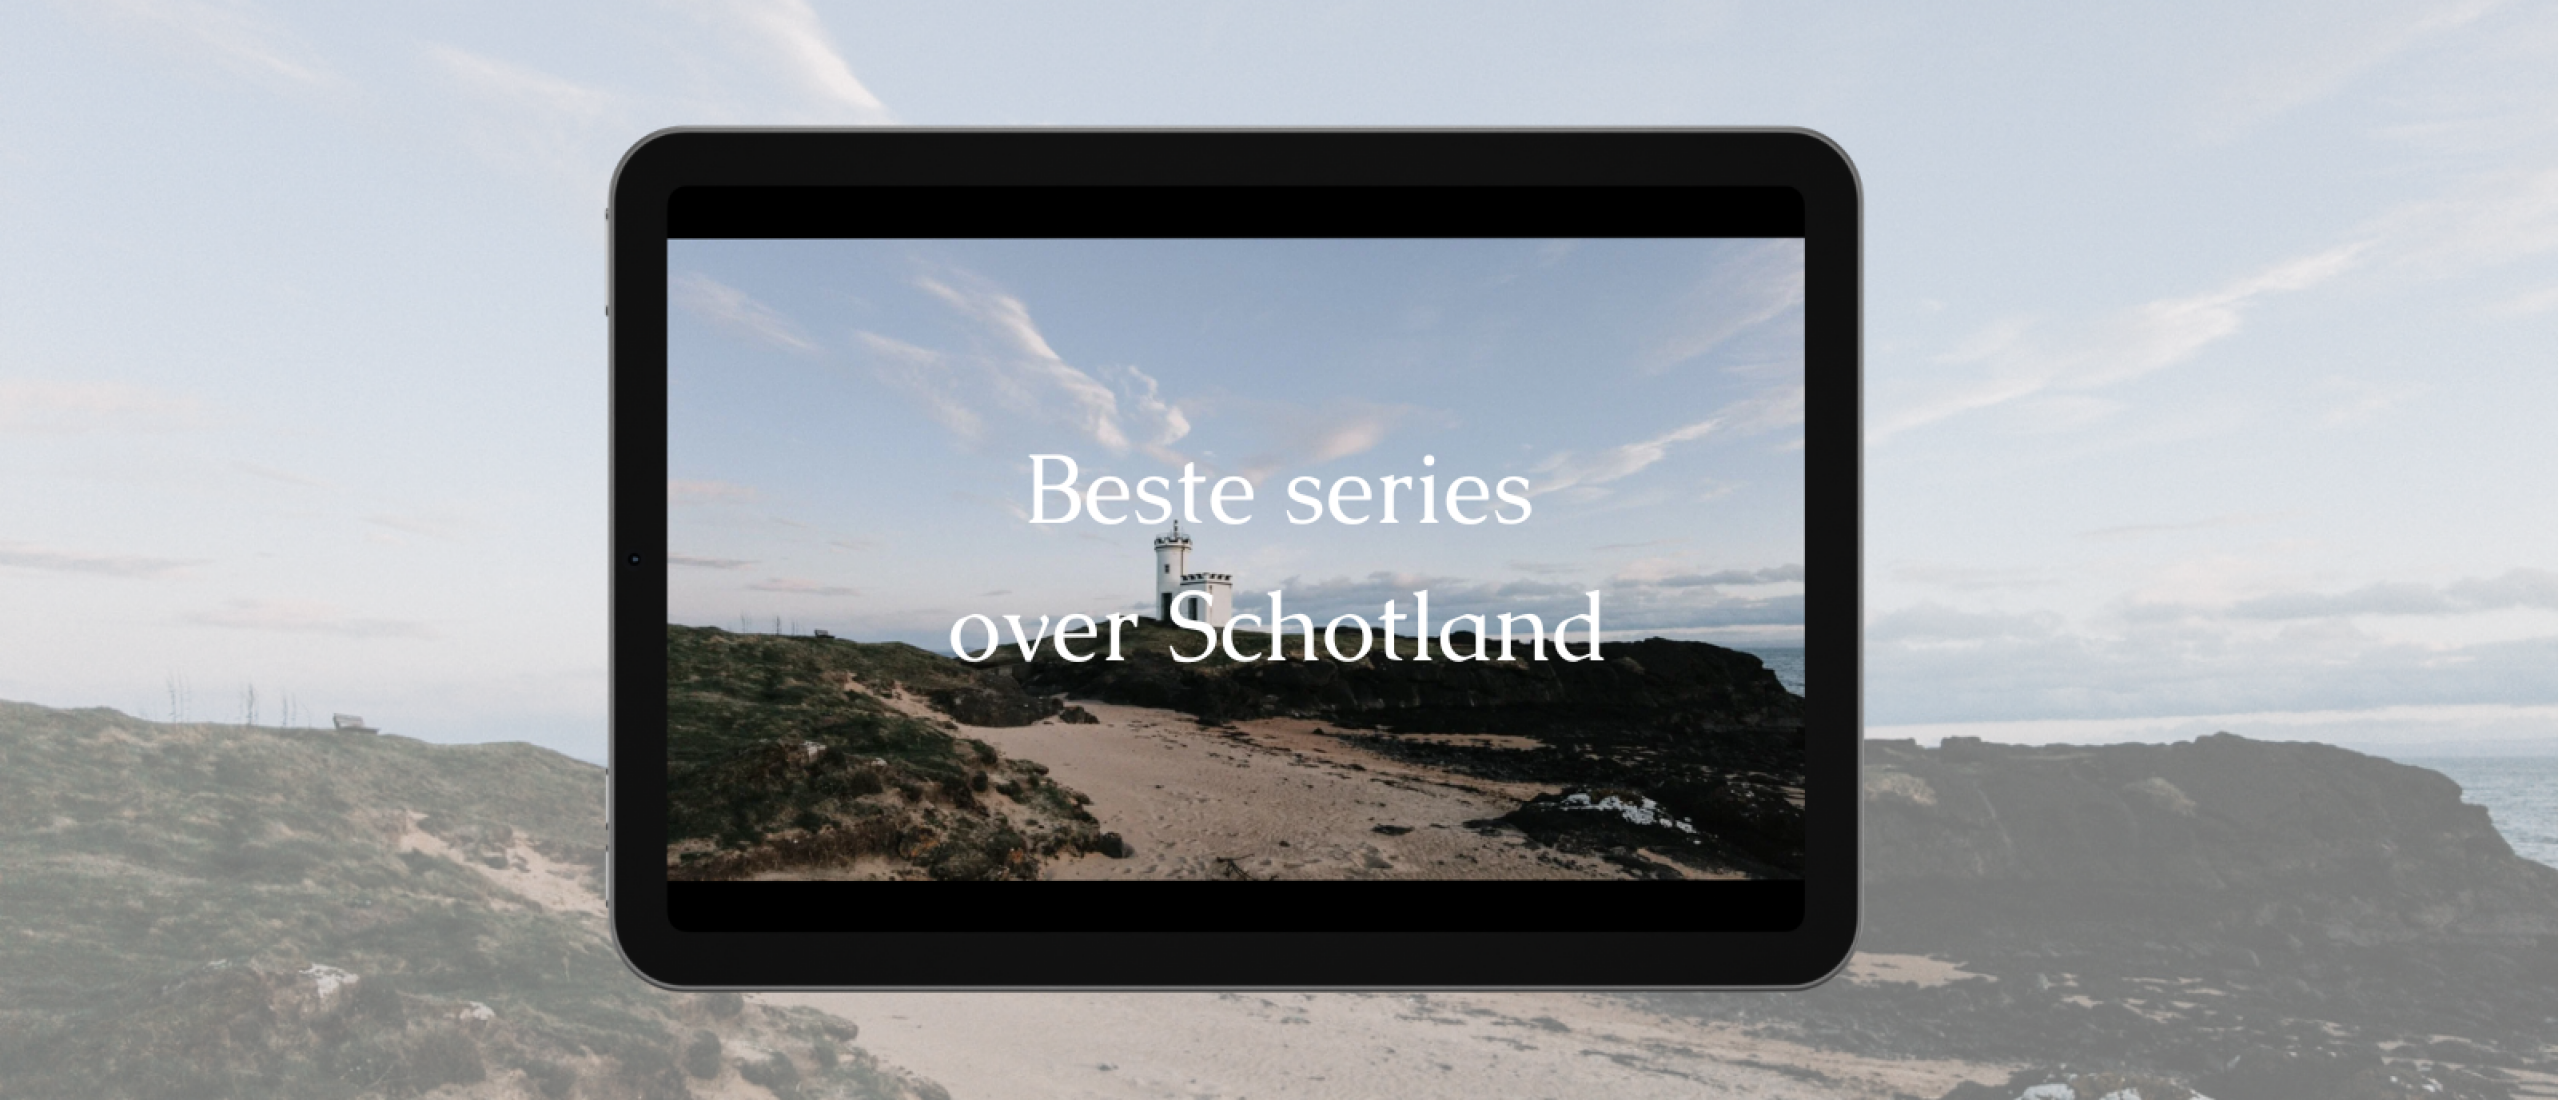 De beste series over Schotland